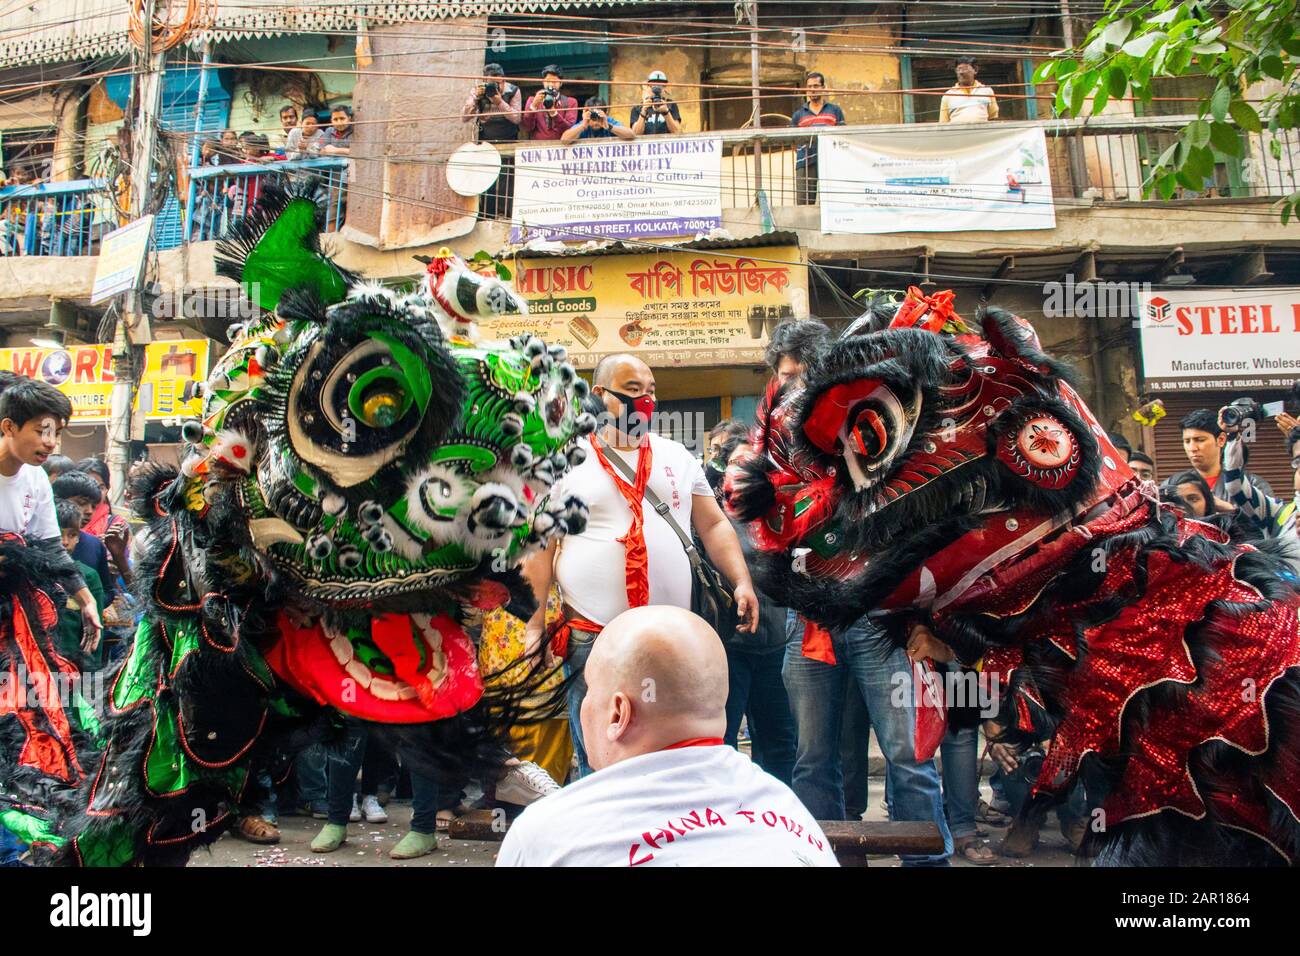 Les membres de la communauté chinoise dansent le lion dans la rue pendant la célébration de la nouvelle année chinoise à kolkata.le nouvel an chinois est le festival le plus important et le plus populaire de la culture chinoise. Selon le calendrier lunaire le 25 janvier est célébré comme nouvel an chinois au lieu du 1 er janvier. Ce jour-là, ils exécutent la danse du Dragon, la danse du Lion, etc car on pense qu'ils apportent une bonne chance pour le nouvel an. La population chinoise de Kolkata est principalement concentrée dans deux régions, l'une Terrifient le marché et l'autre Tangra. Chaque année, ils font de nombreuses processions colorées dans la rue pour célébrer le nouveau chinois Banque D'Images